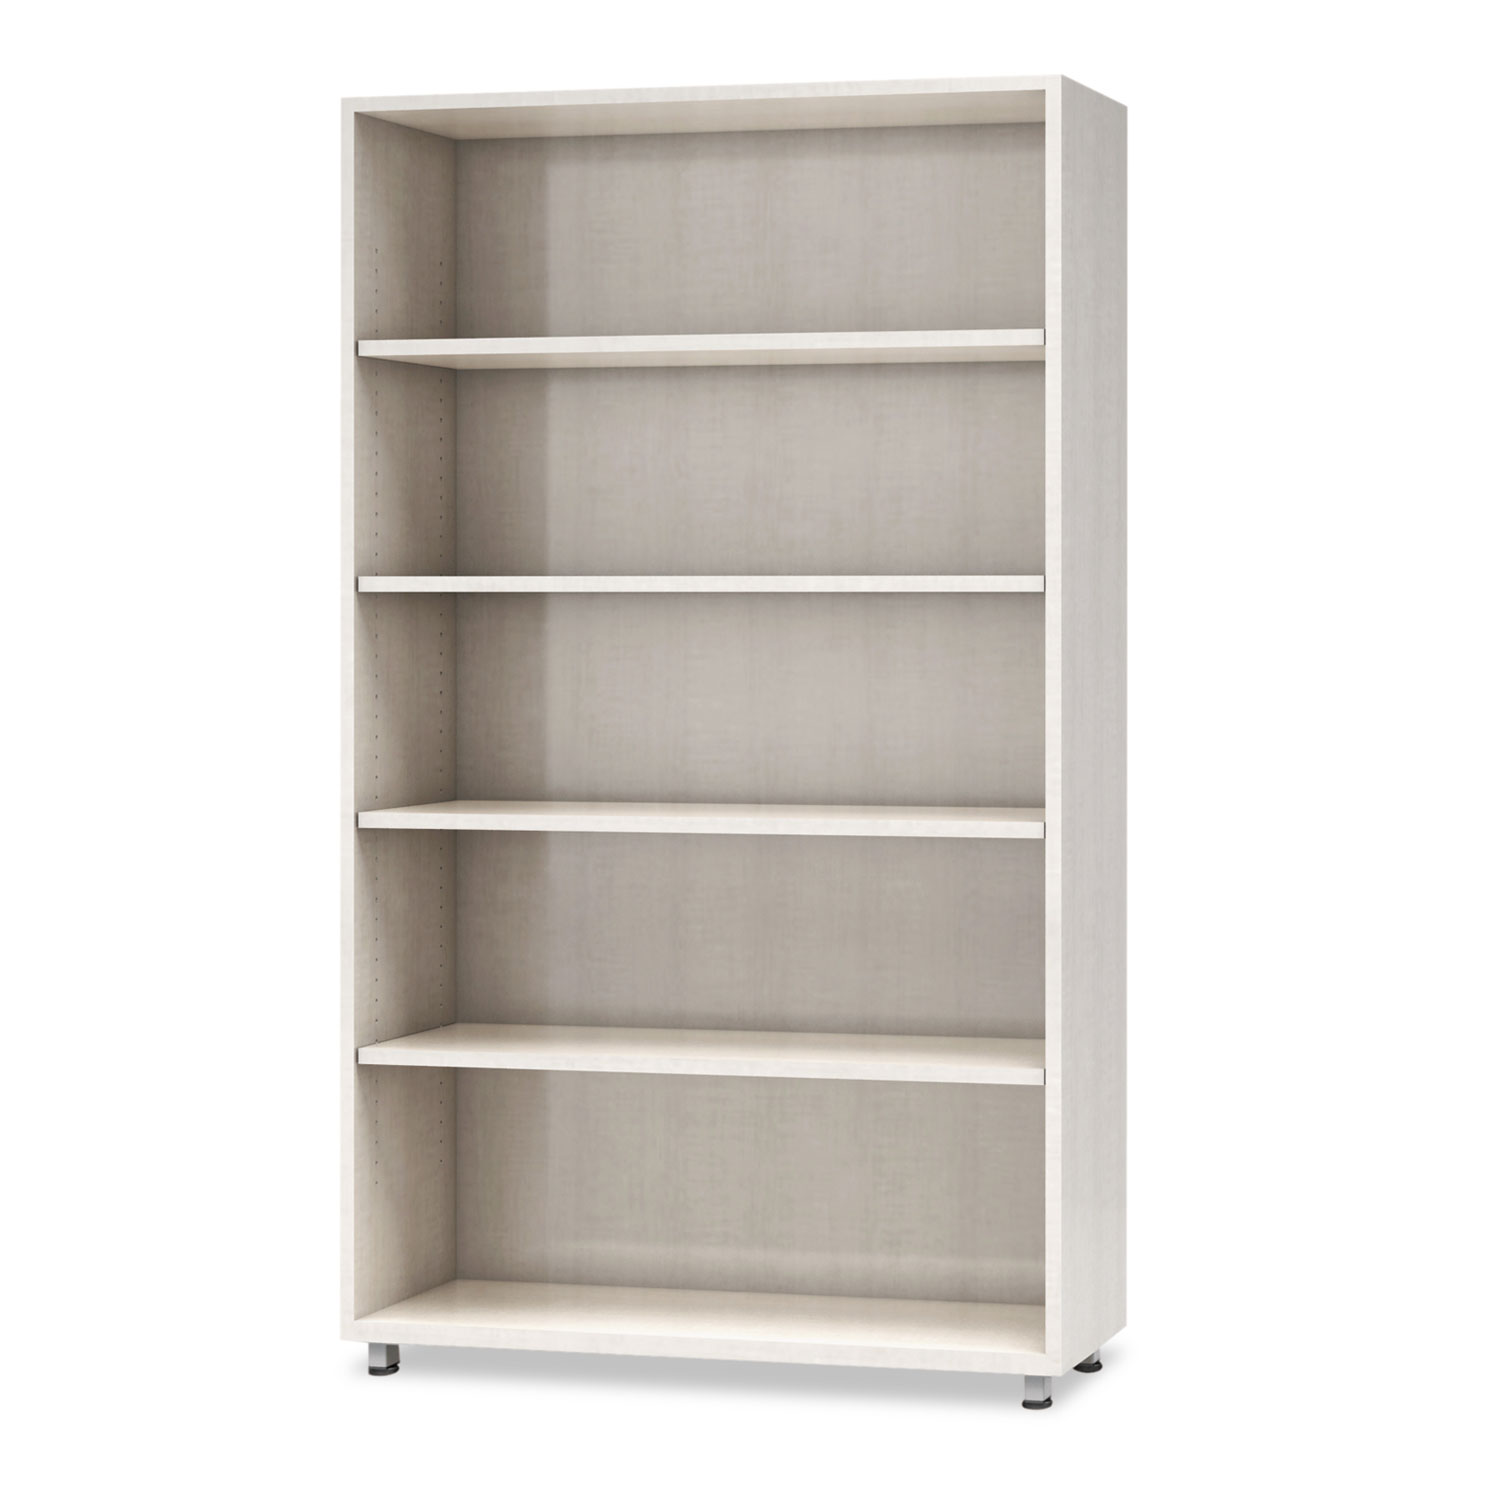  Safco EZBC3662AGZ e5 Series Five-Shelf Bookcase, 36w x 15d x 62h, White (MLNEZBC3662AGZ) 